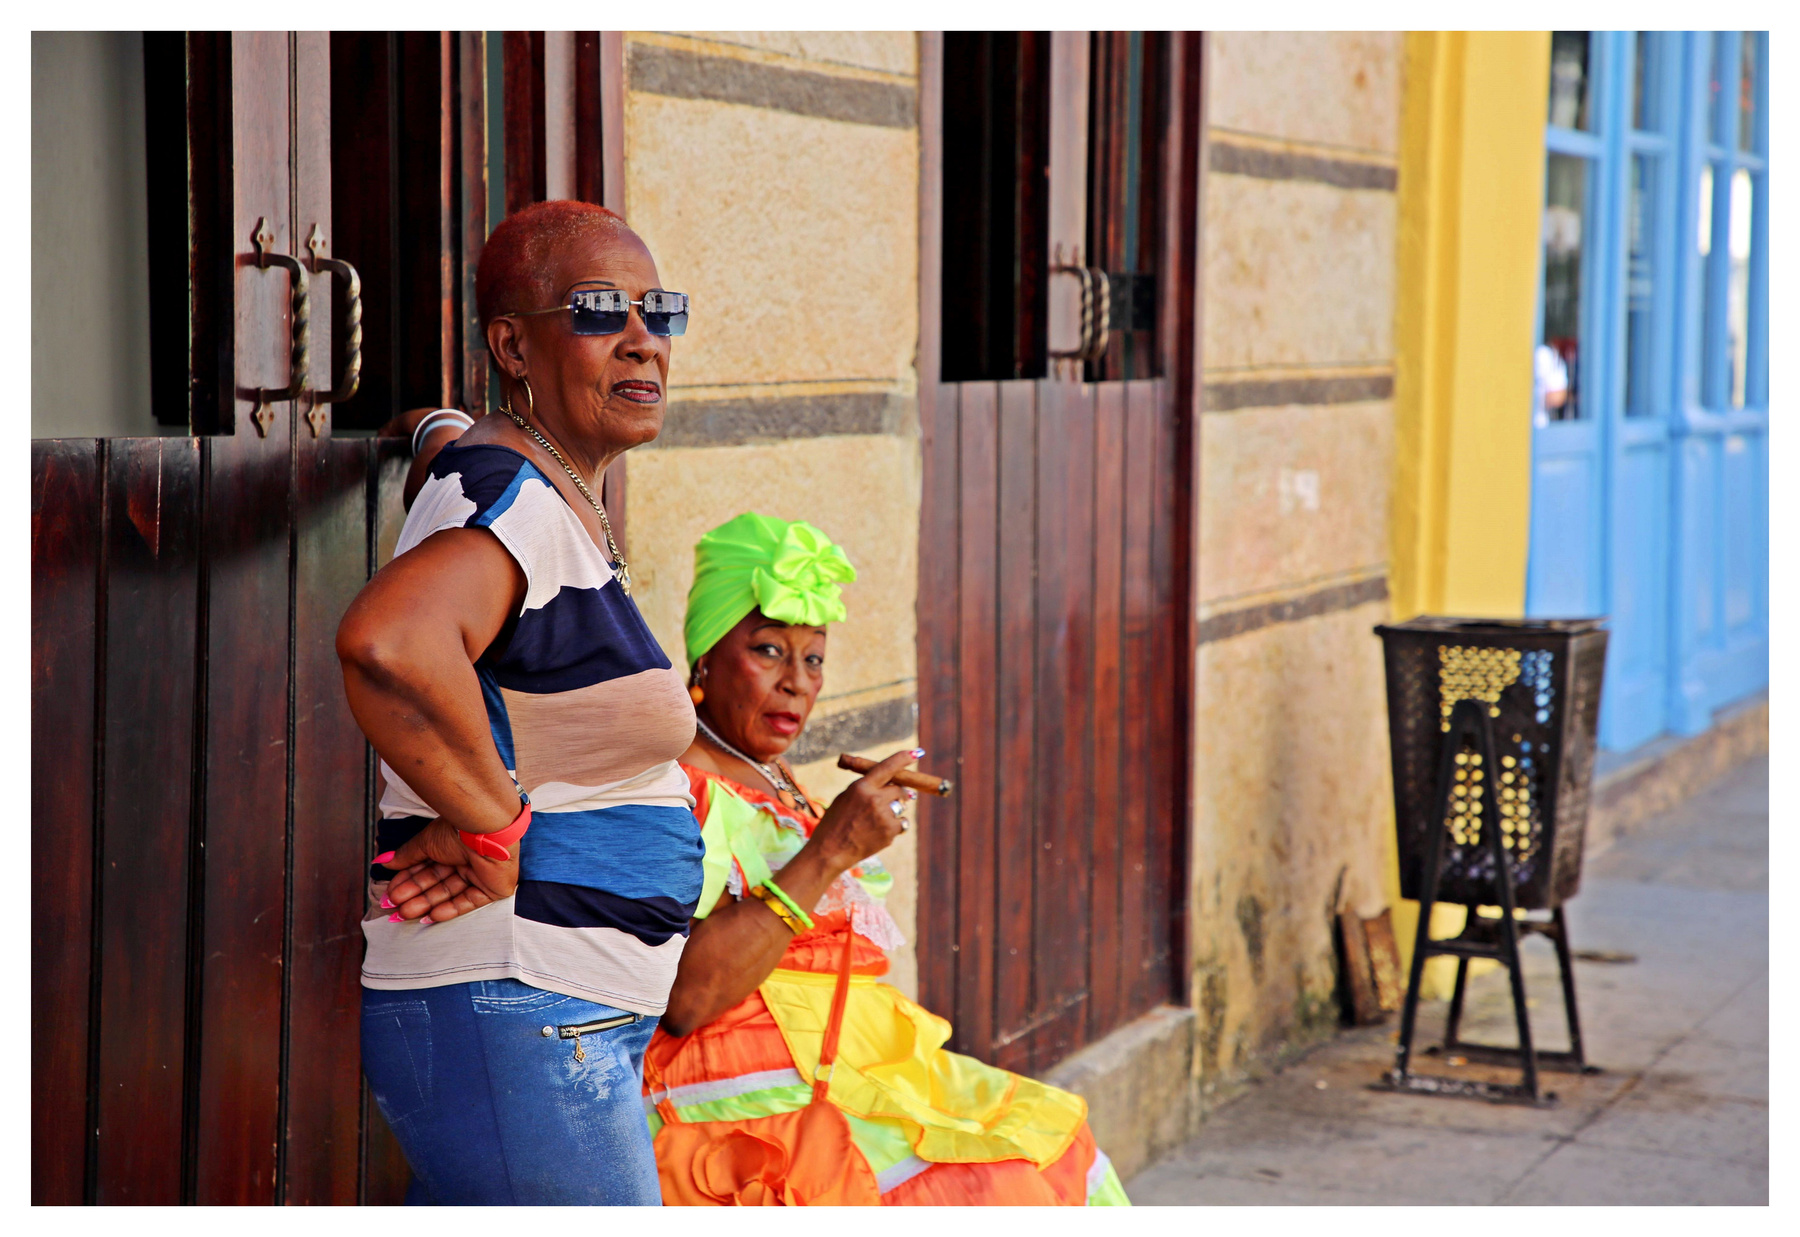 tabaco y chanel cuba la habana vieja libre isla bonita cigarros cubanos